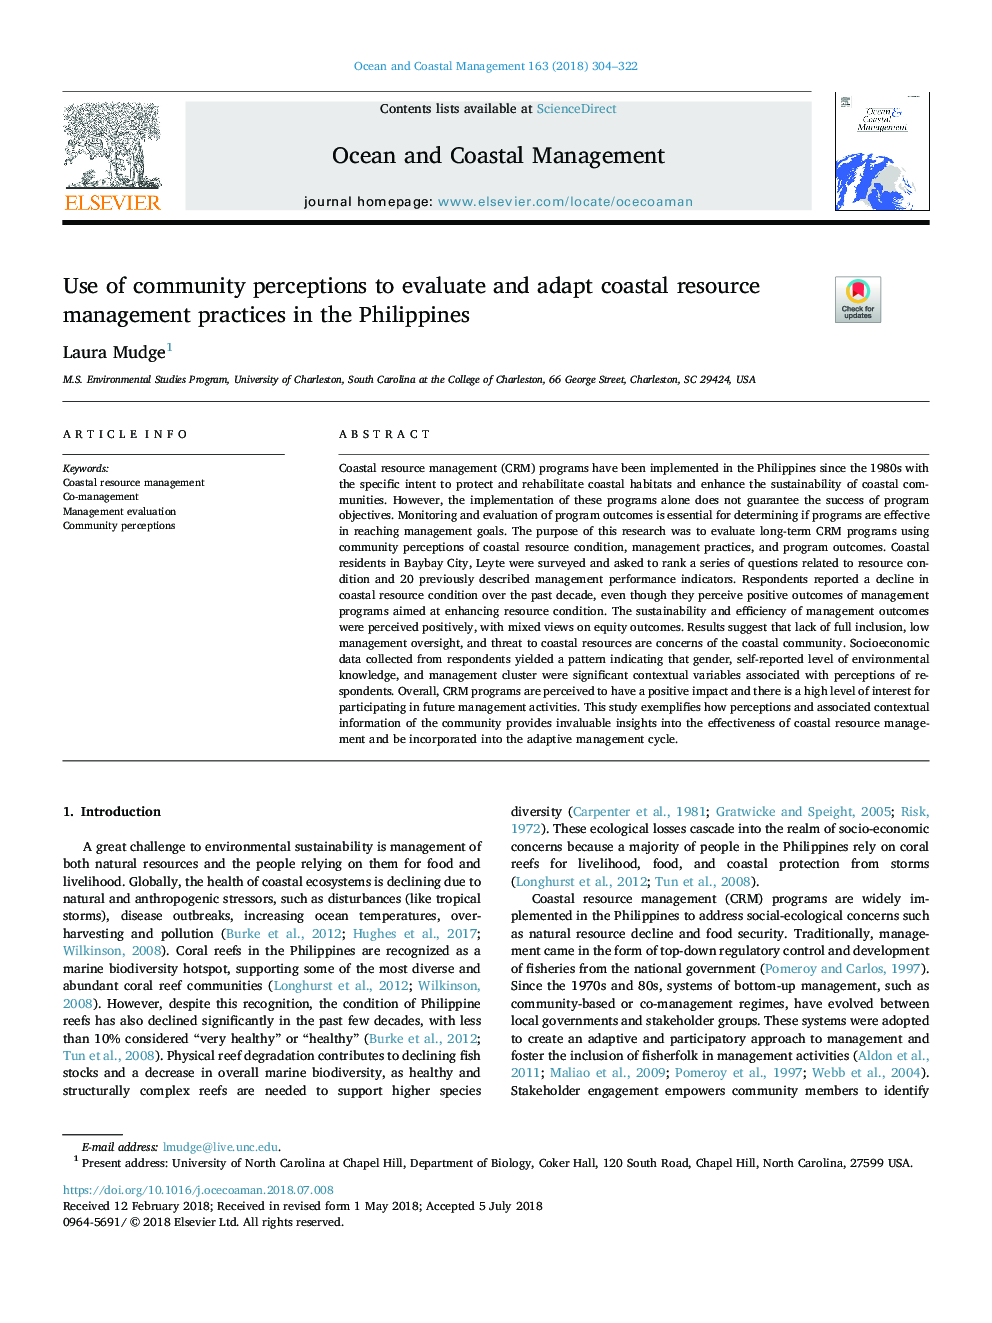 استفاده از ادراکات جامعه برای ارزیابی و تطبیق شیوه های مدیریت منابع ساحلی در فیلیپین 